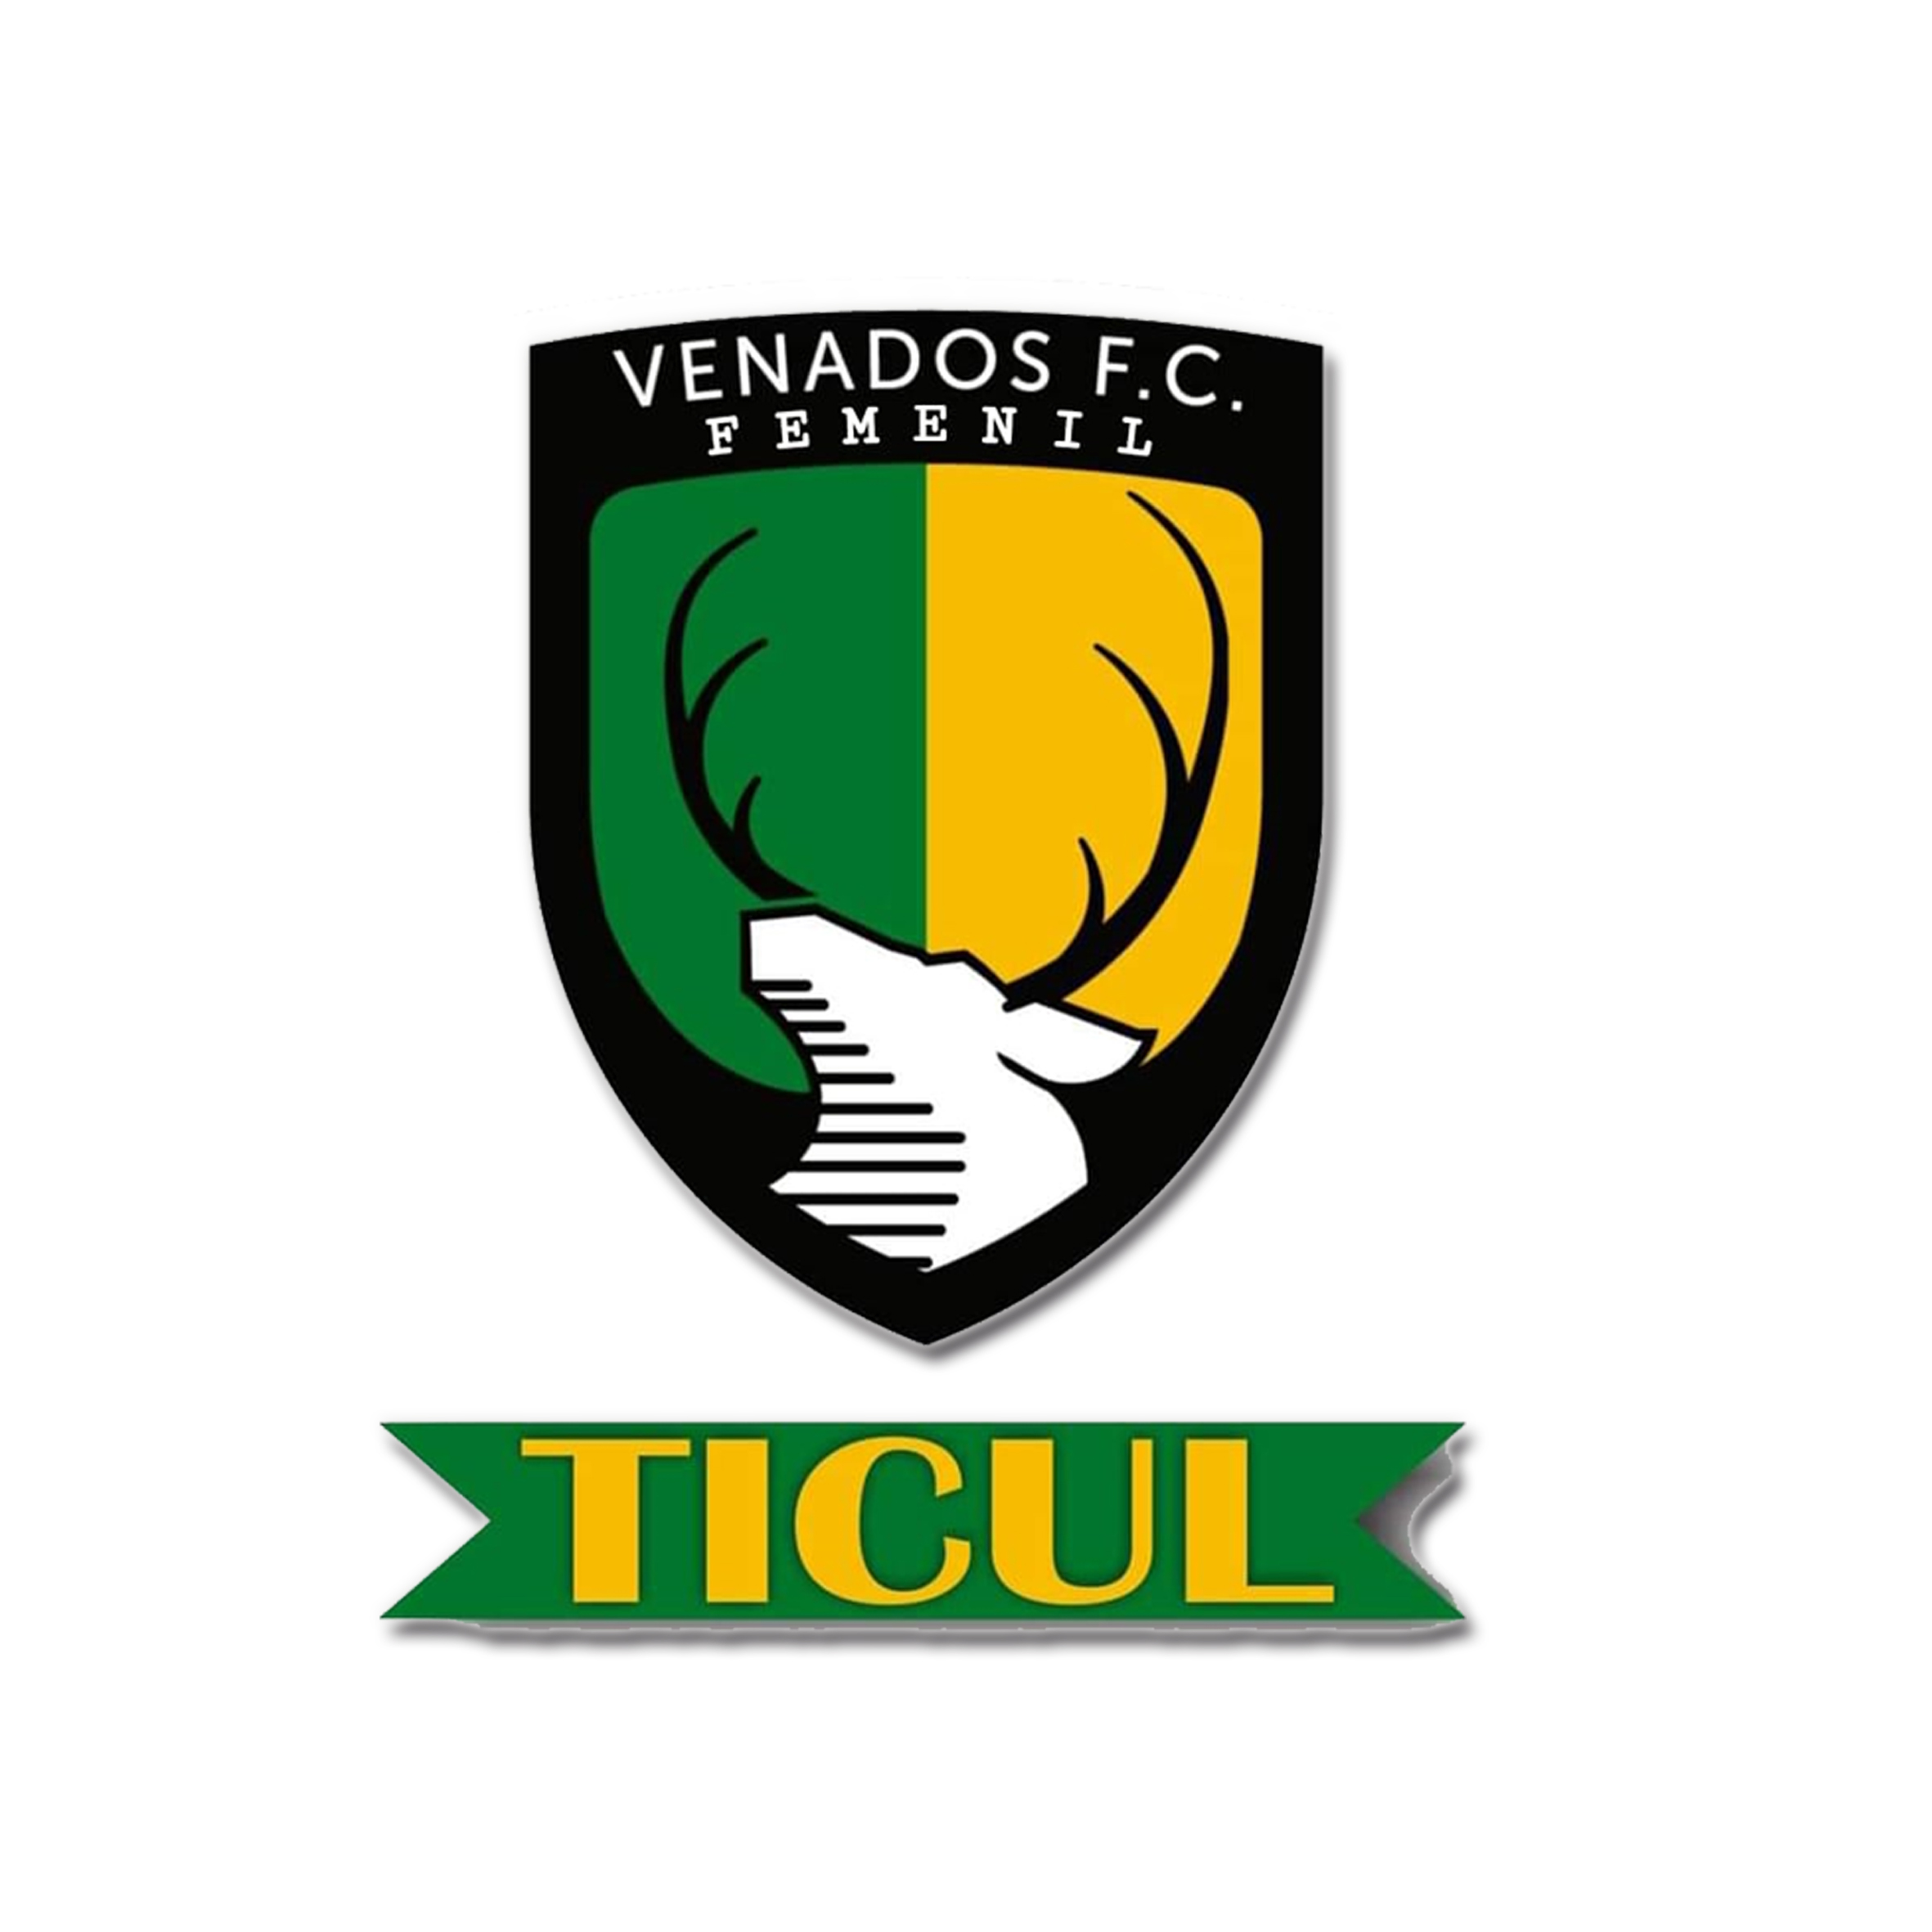 Venados FC Ticul